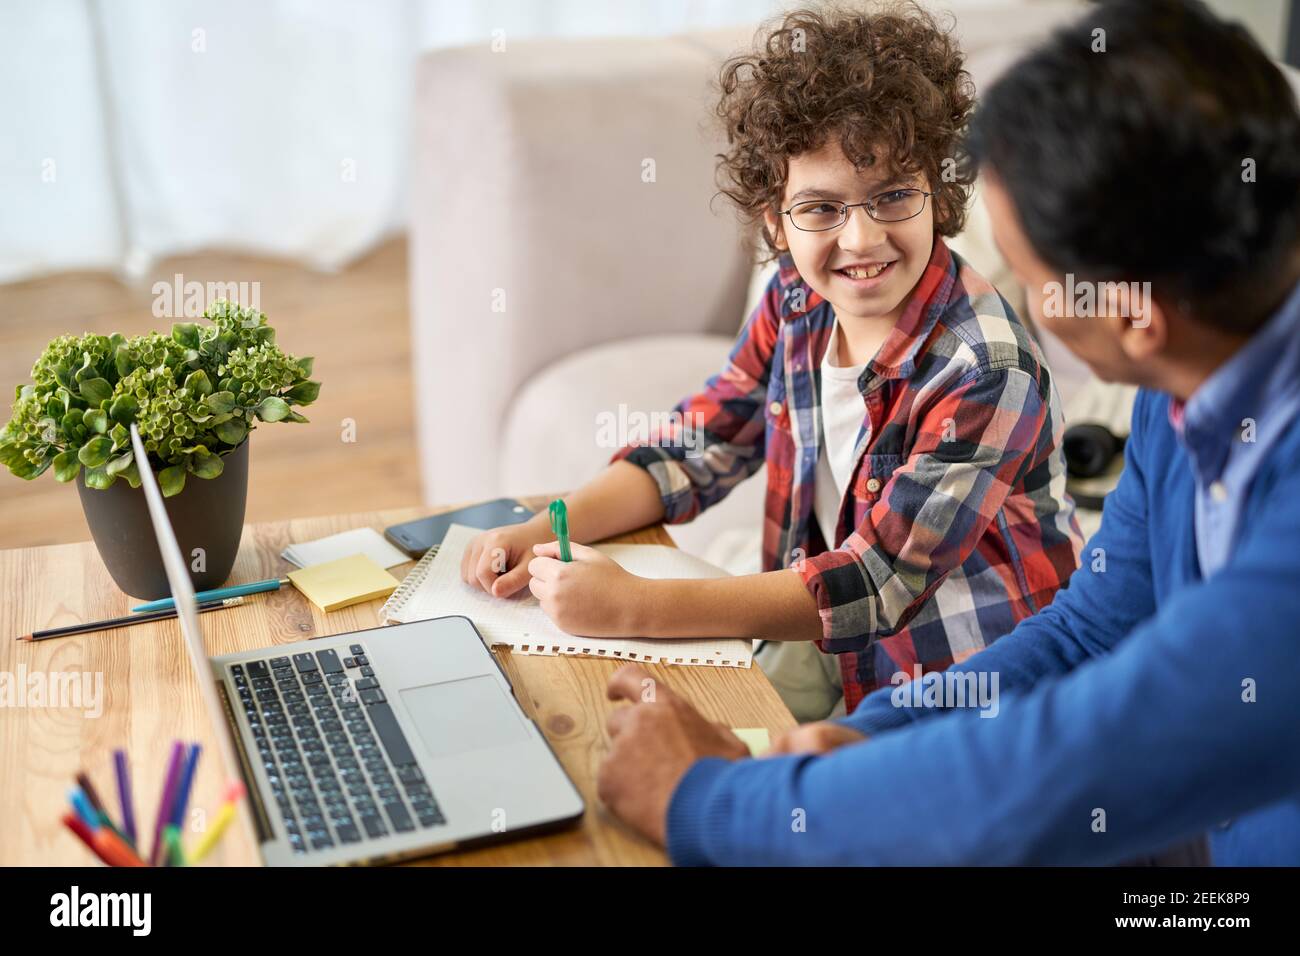 Porträt eines fröhlichen kleinen hispanischen Schuljungen, der zusammen mit seinem Vater Hausaufgaben macht und dabei Laptop benutzt, während er zu Hause am Schreibtisch sitzt. Online studieren, Familie, Vaterschaft Konzept Stockfoto